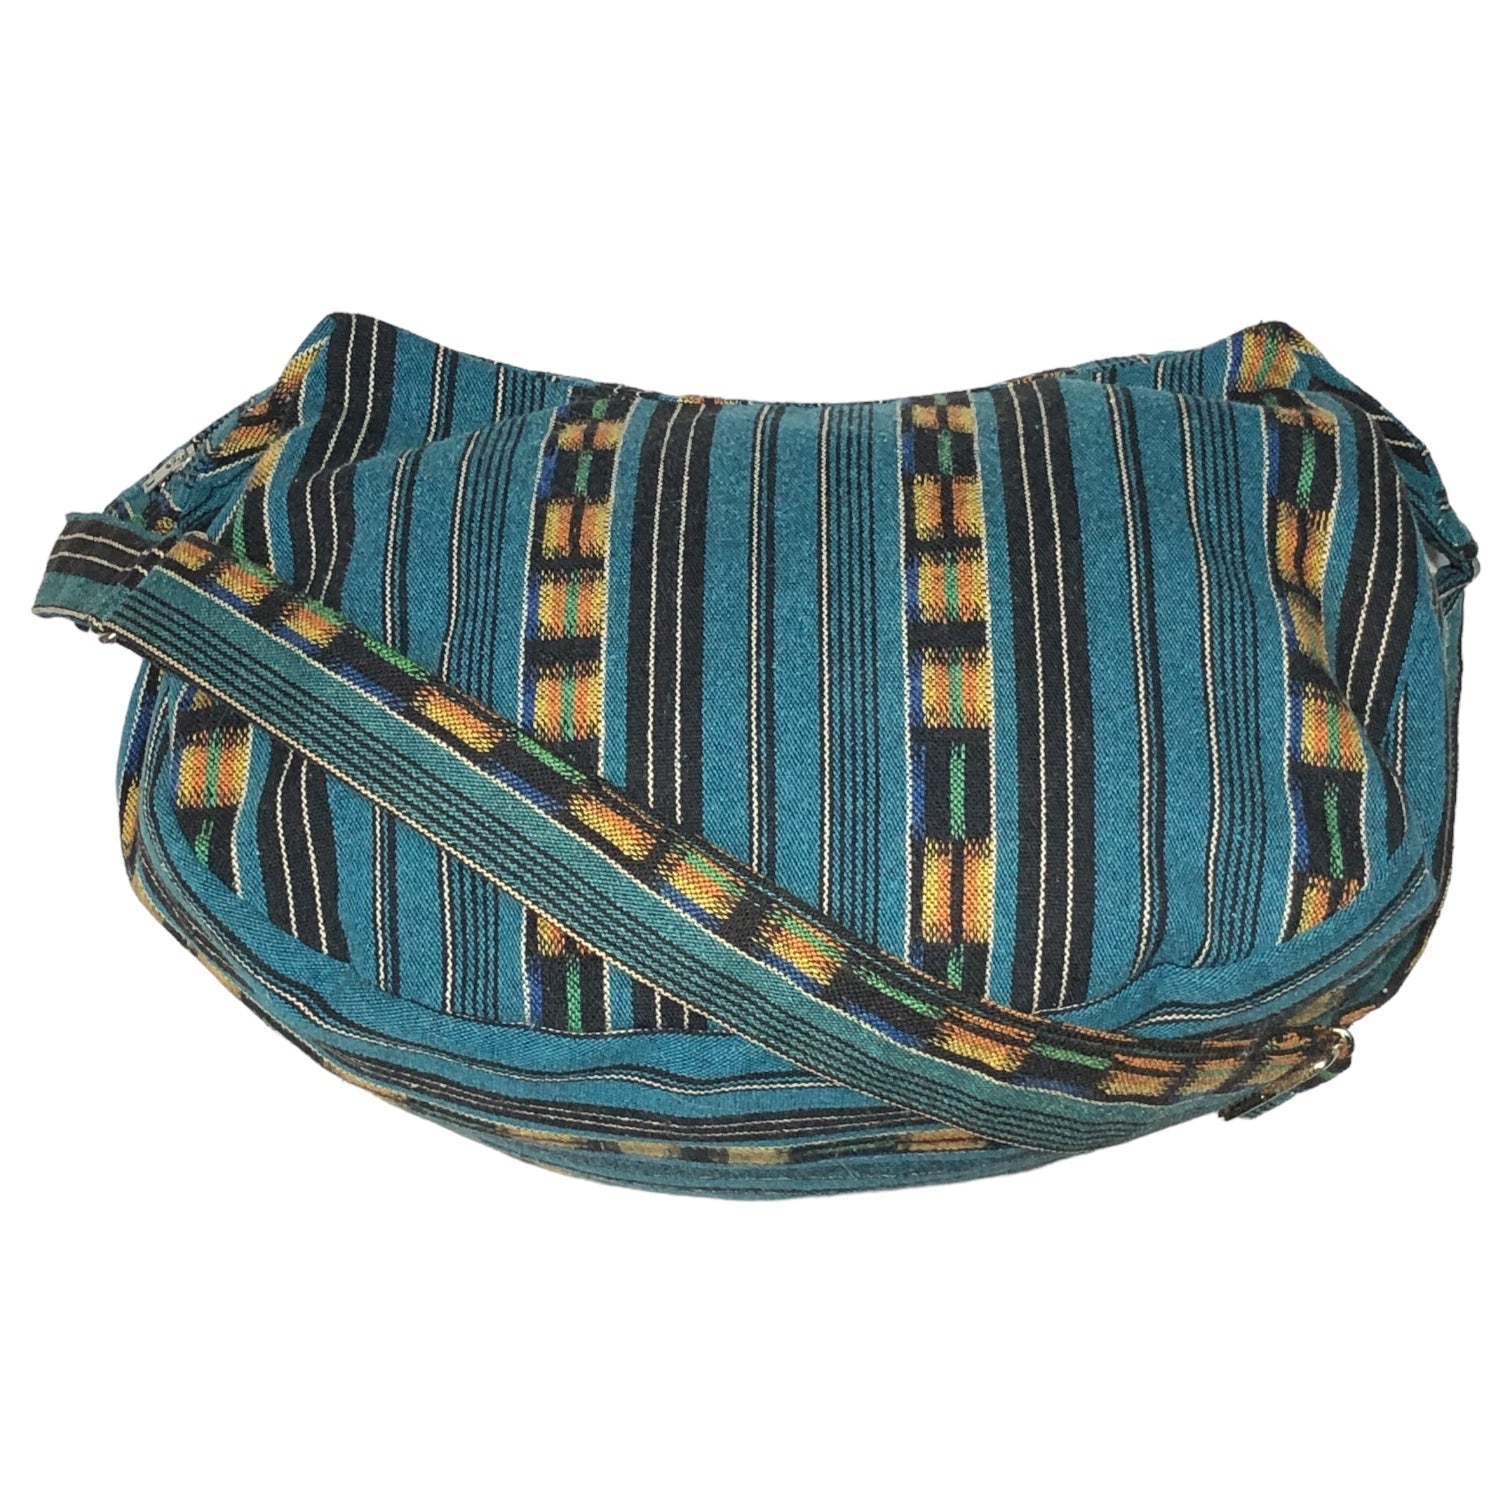 TENDERLOIN × PORTER(テンダーロイン×ポーター) Guatemalan pattern shoulder bag グアテマラ柄 ショルダーバッグ  FREE ターコイズ×オレンジ